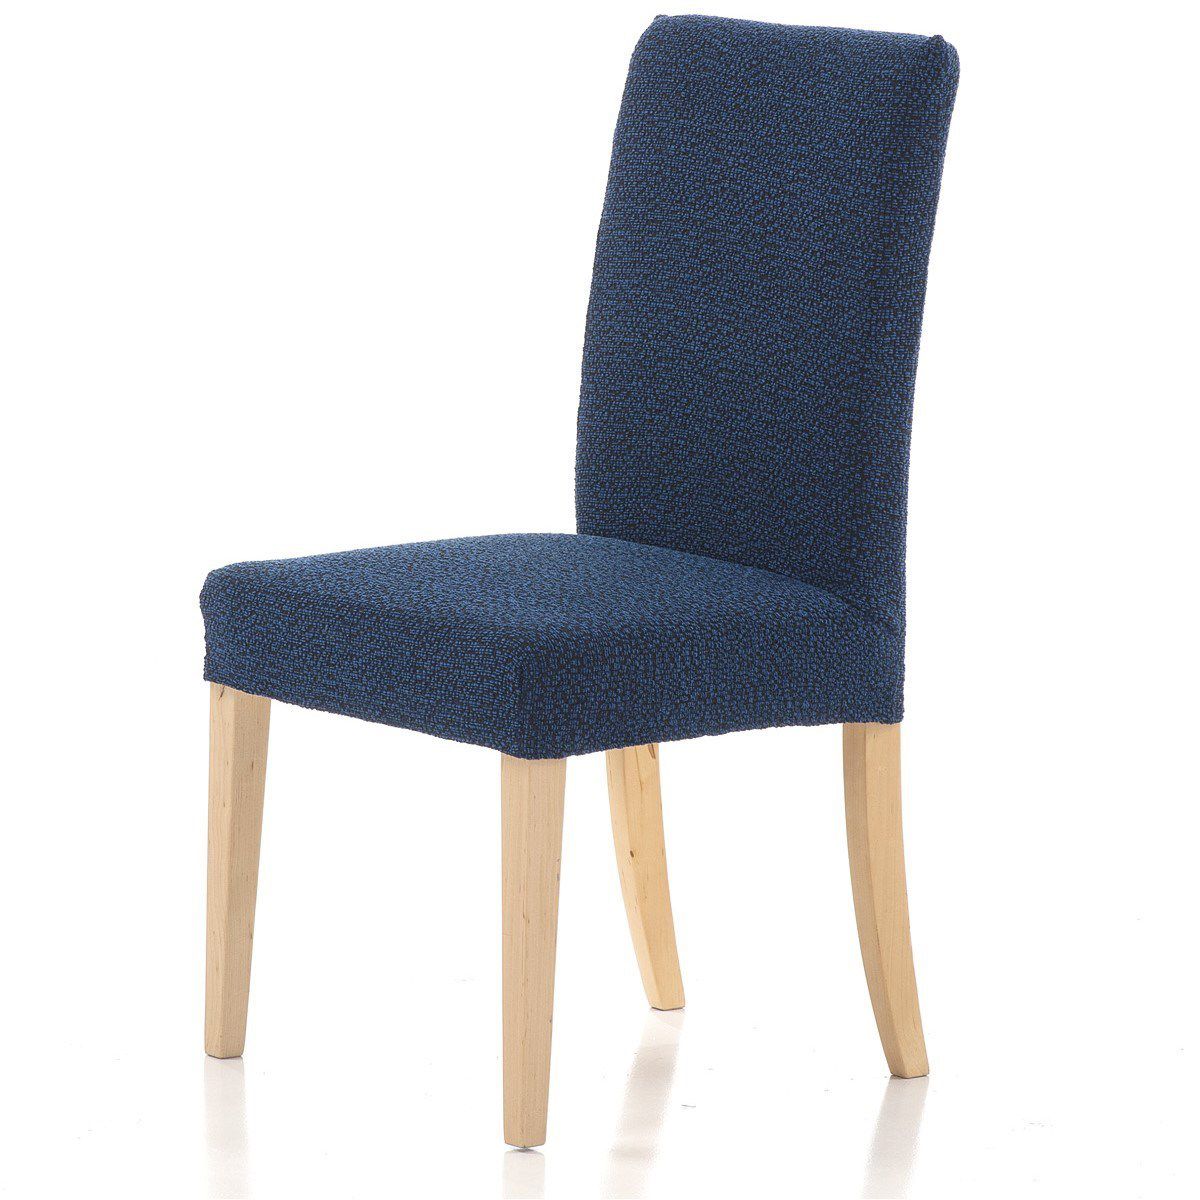 Forbyt Multielastický potah na židli Petra modrá, 40 - 50 cm, sada 2 ks - 4home.cz